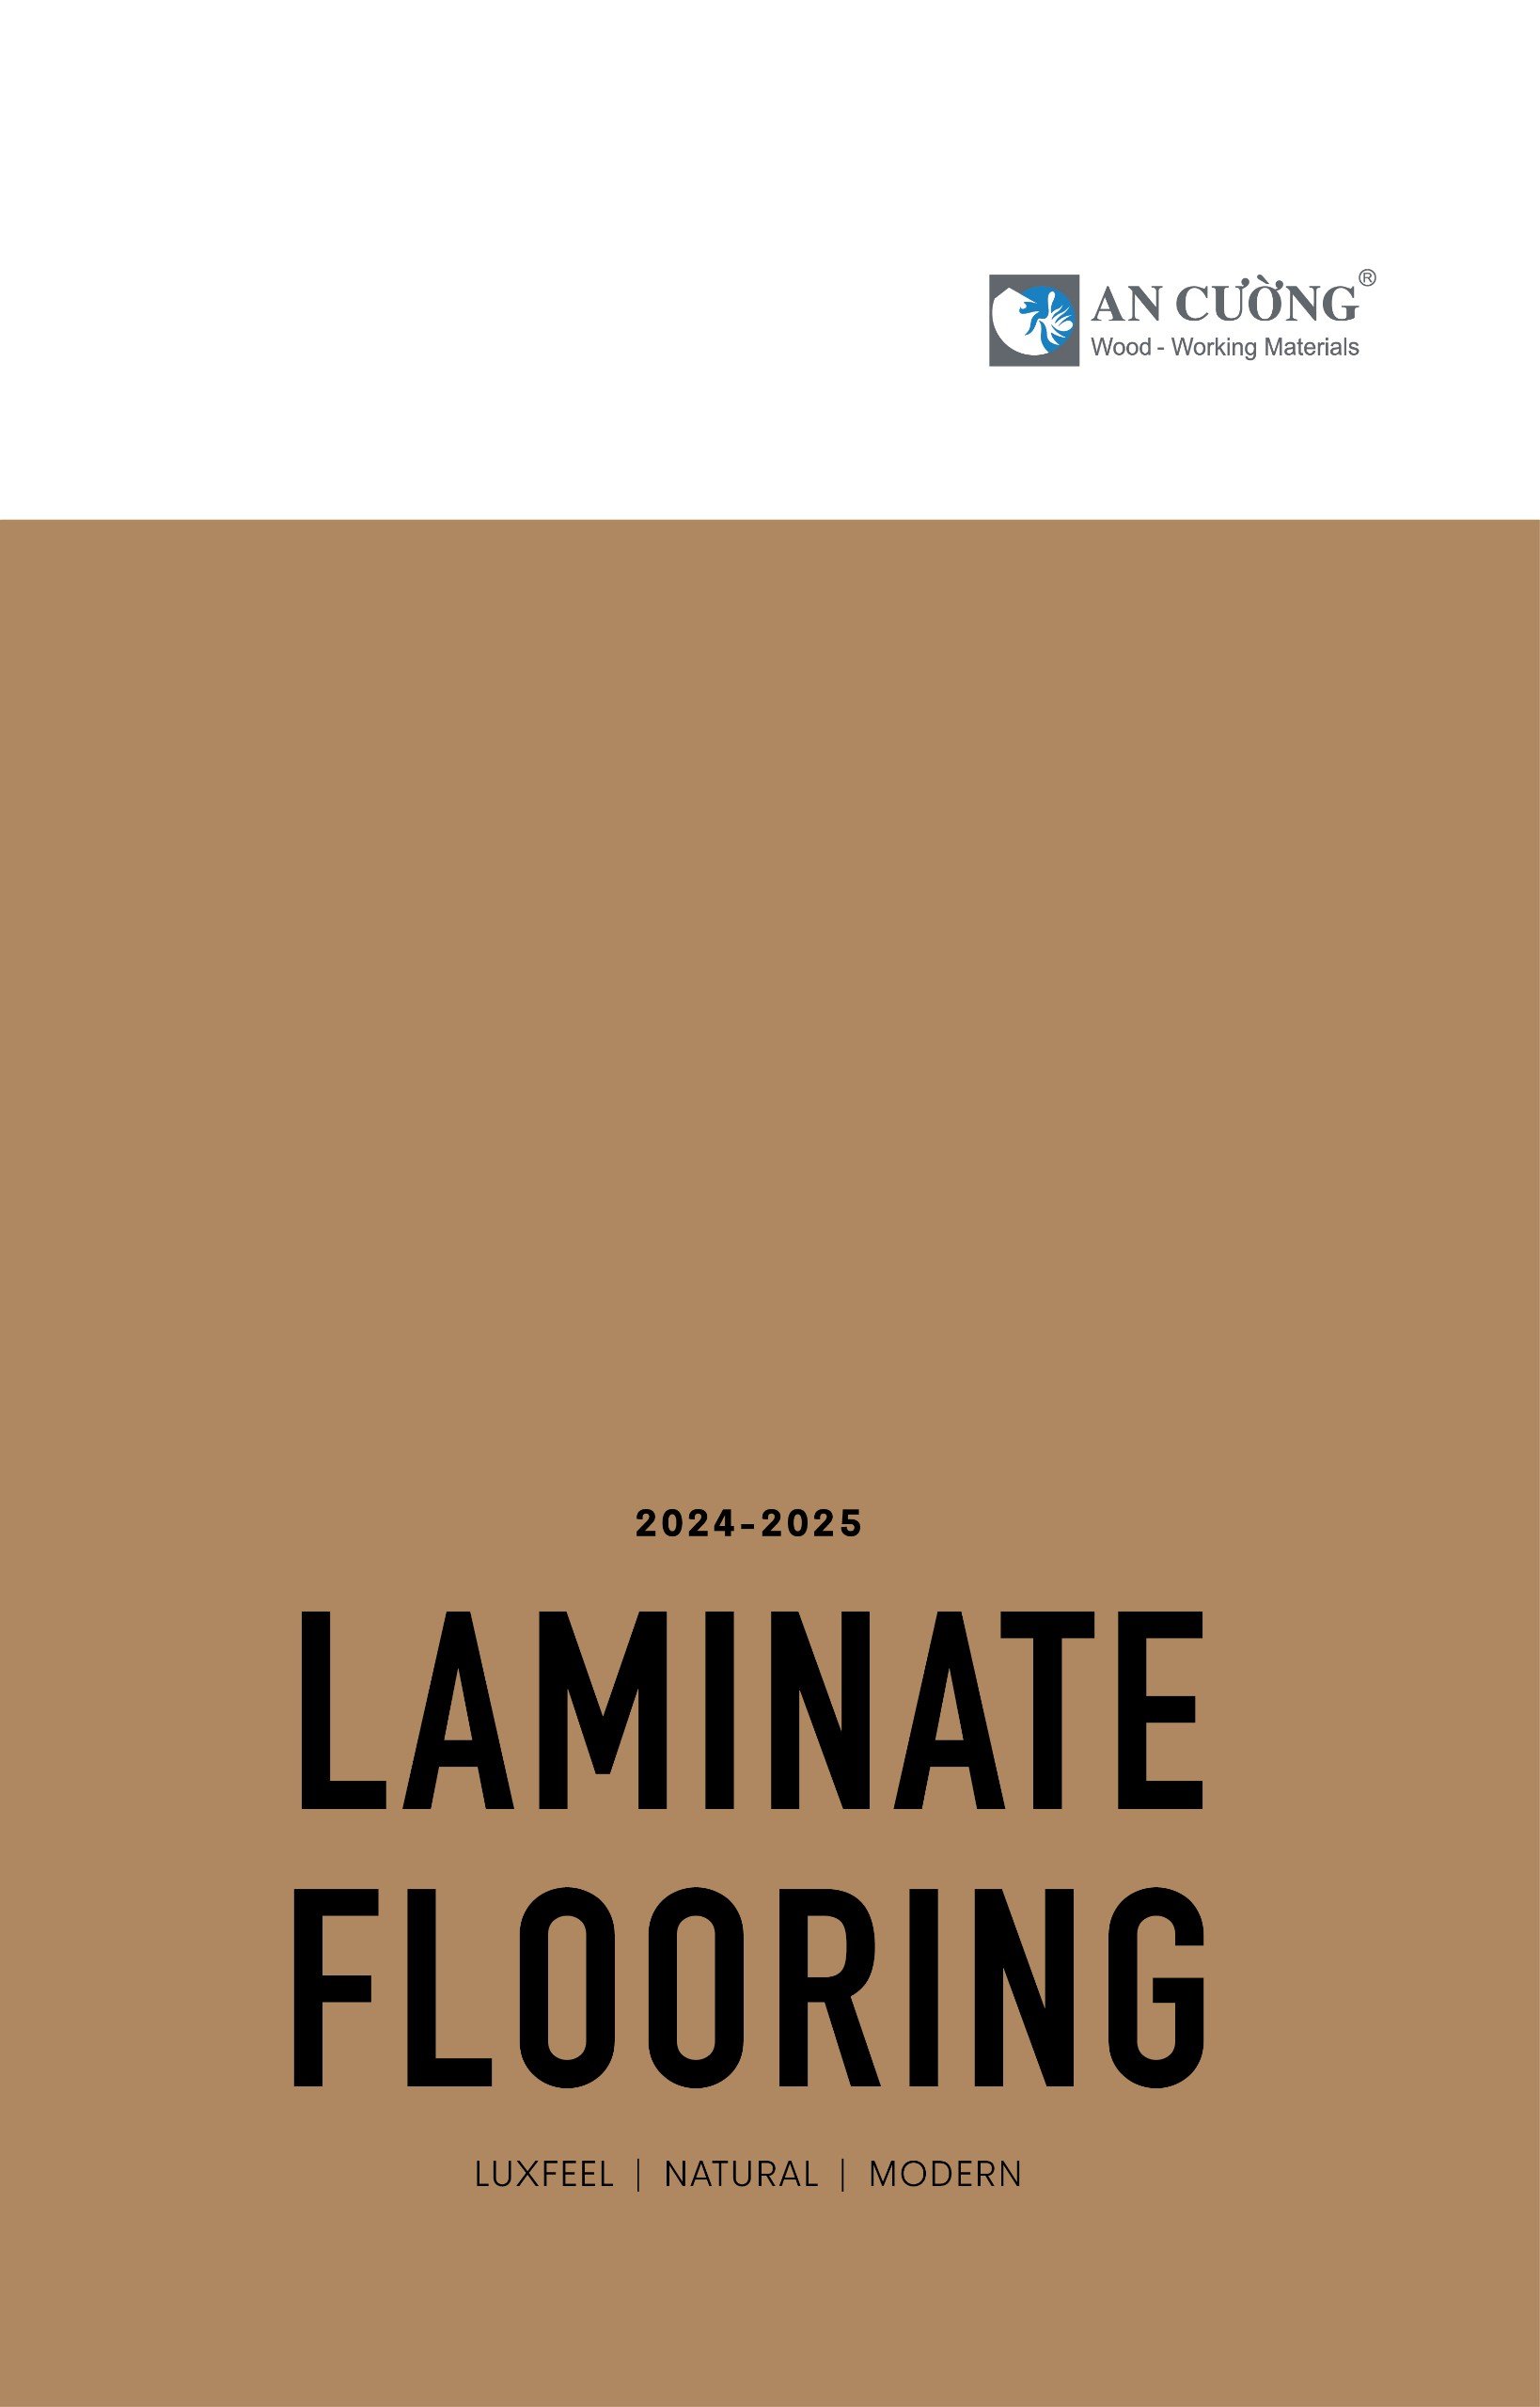 LAMINATE FLOORING